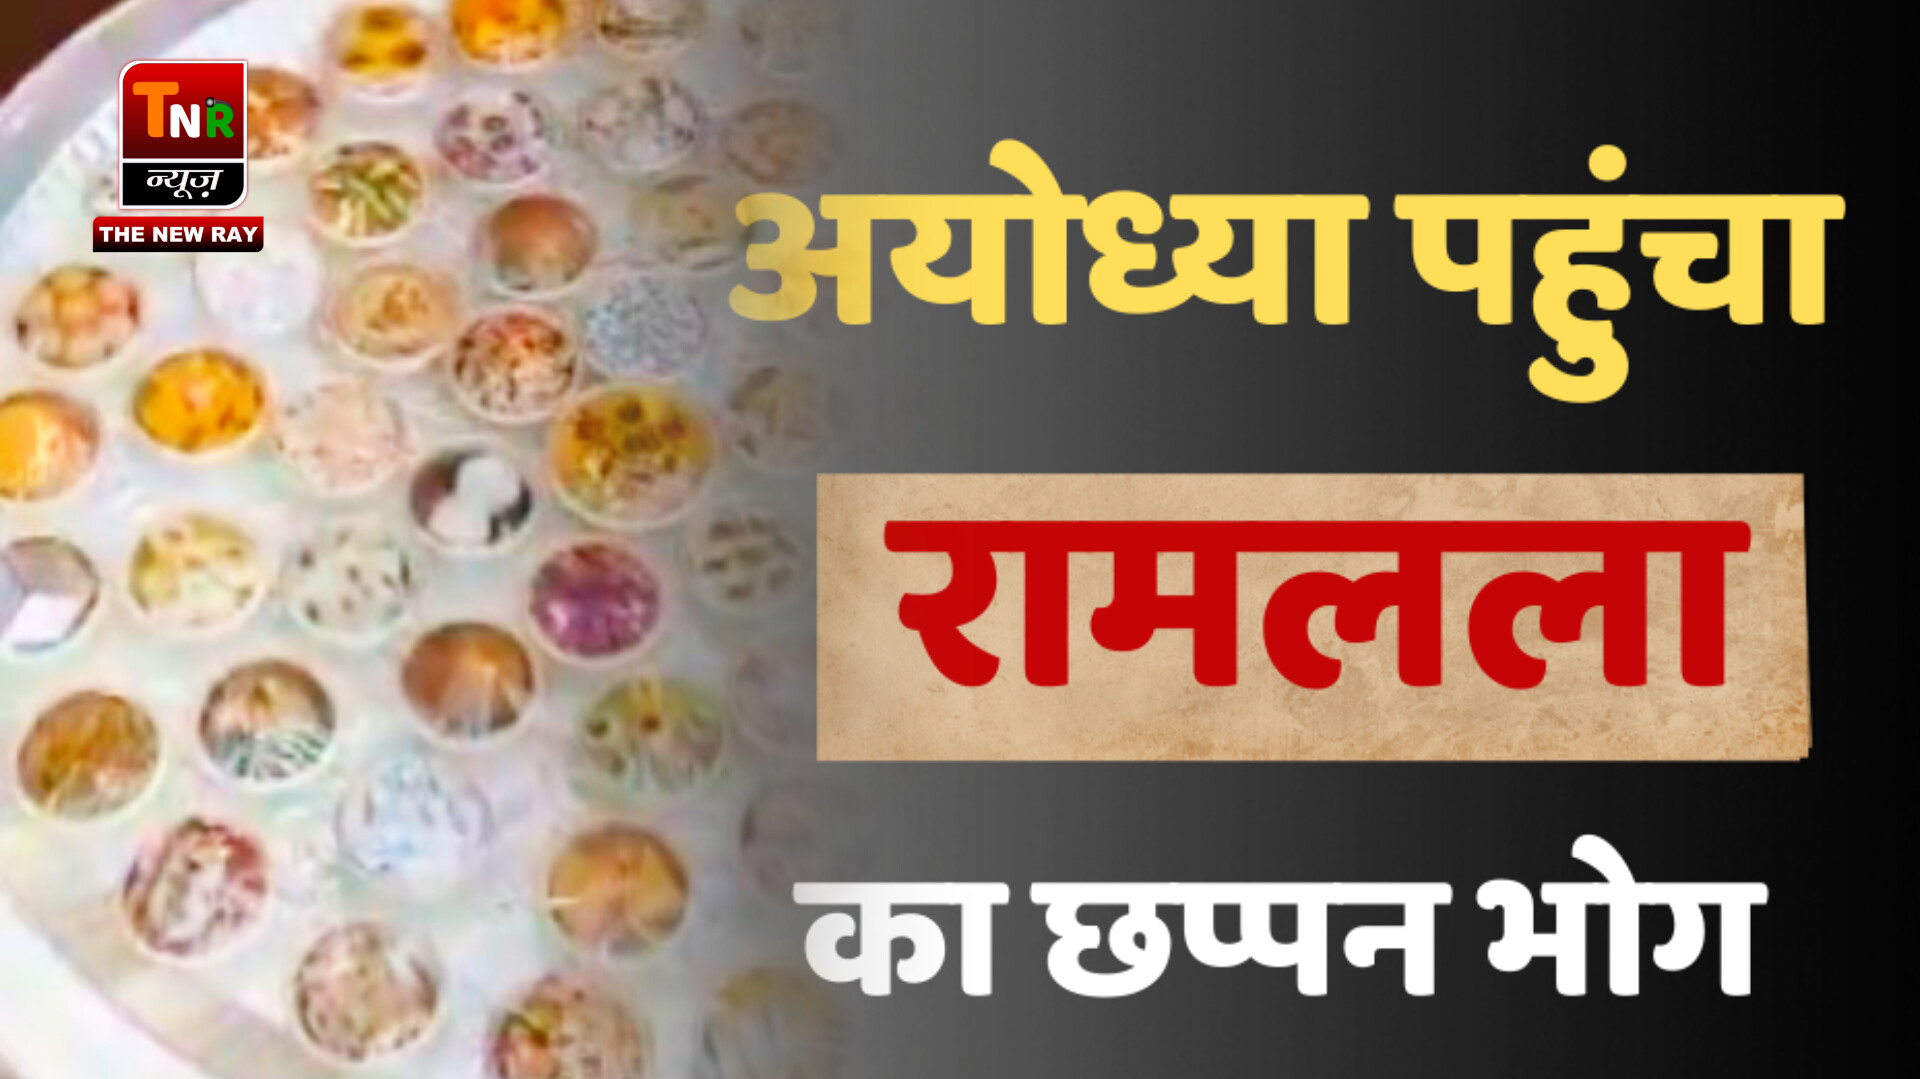 अयोध्या पहुंचा रामलला का 56 भोग, चांदी की थाली में सजाए गए 56 प्रकार के पकवान – TNR न्यूज़ 